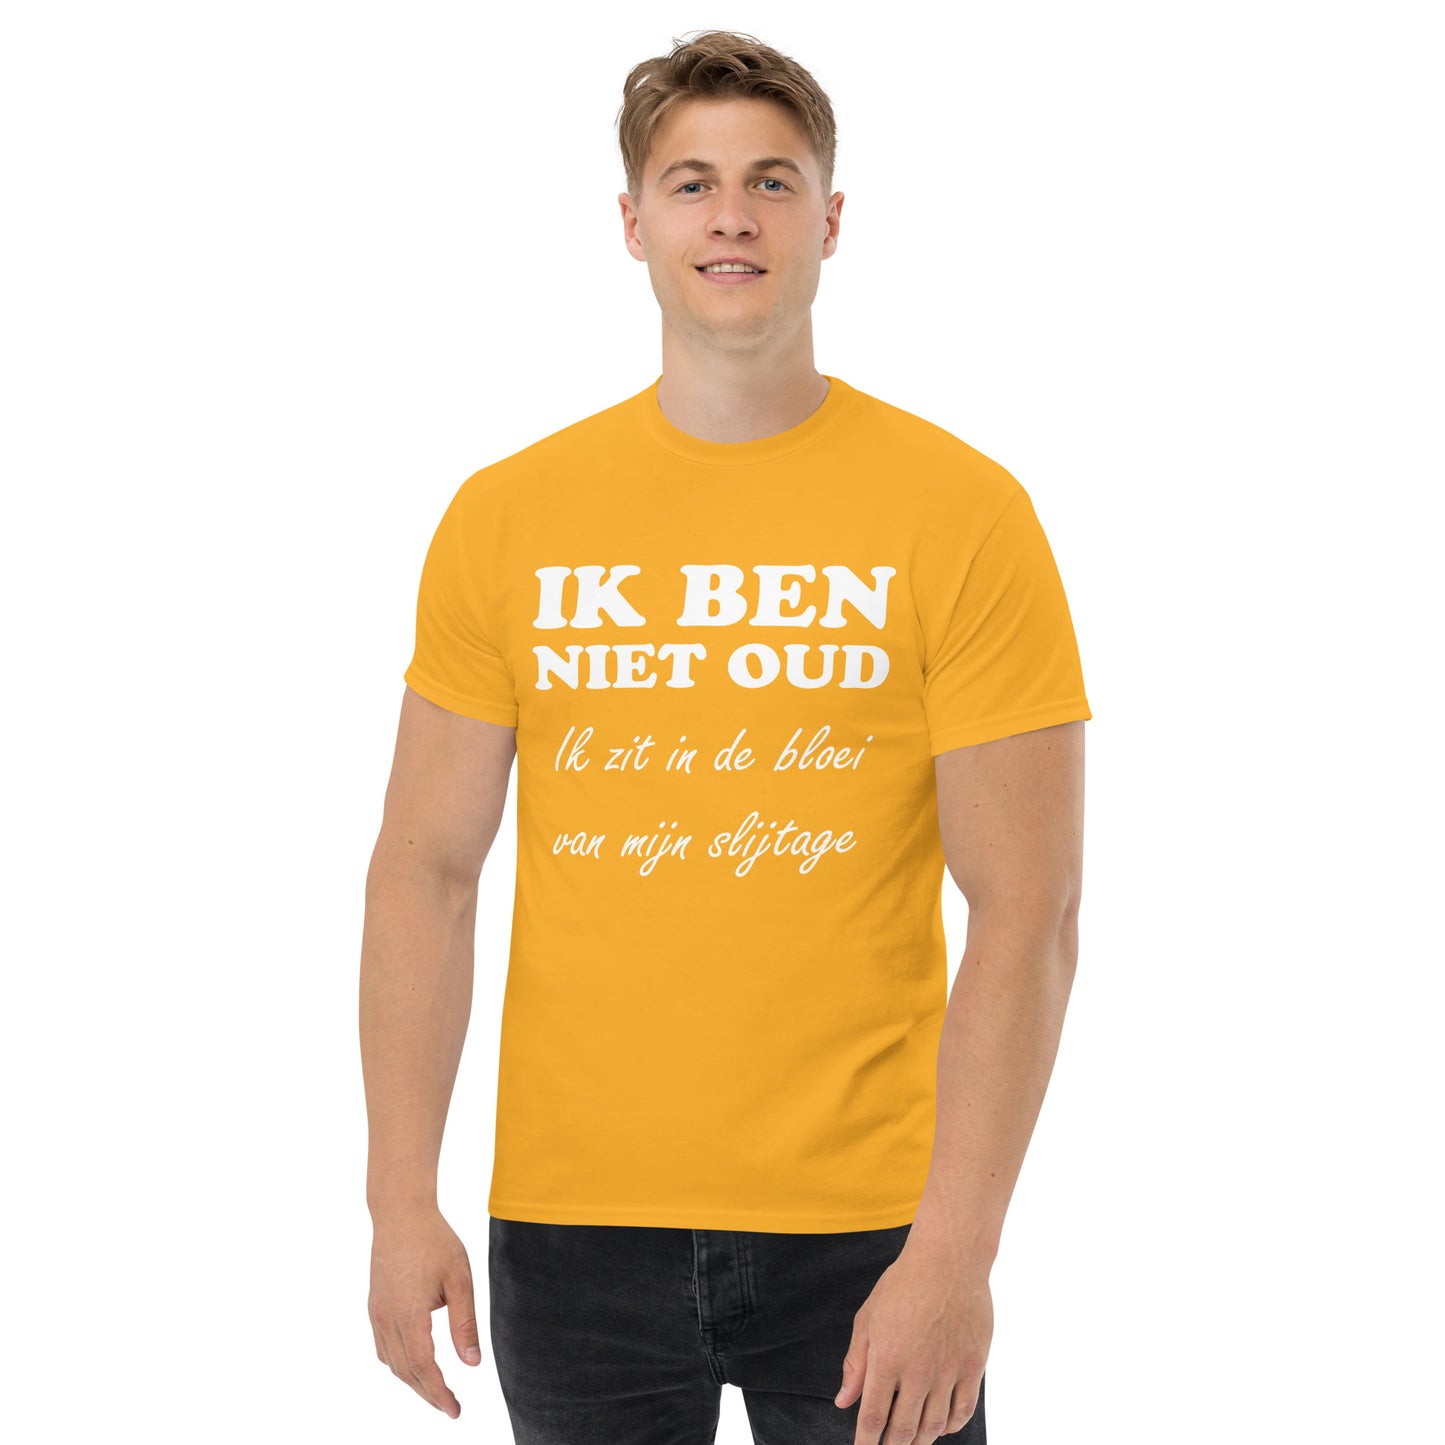 Men with Gold T-shirt with the text in white "IK BEN NIET OUD ik zit in de bloei van mijn slijtage"